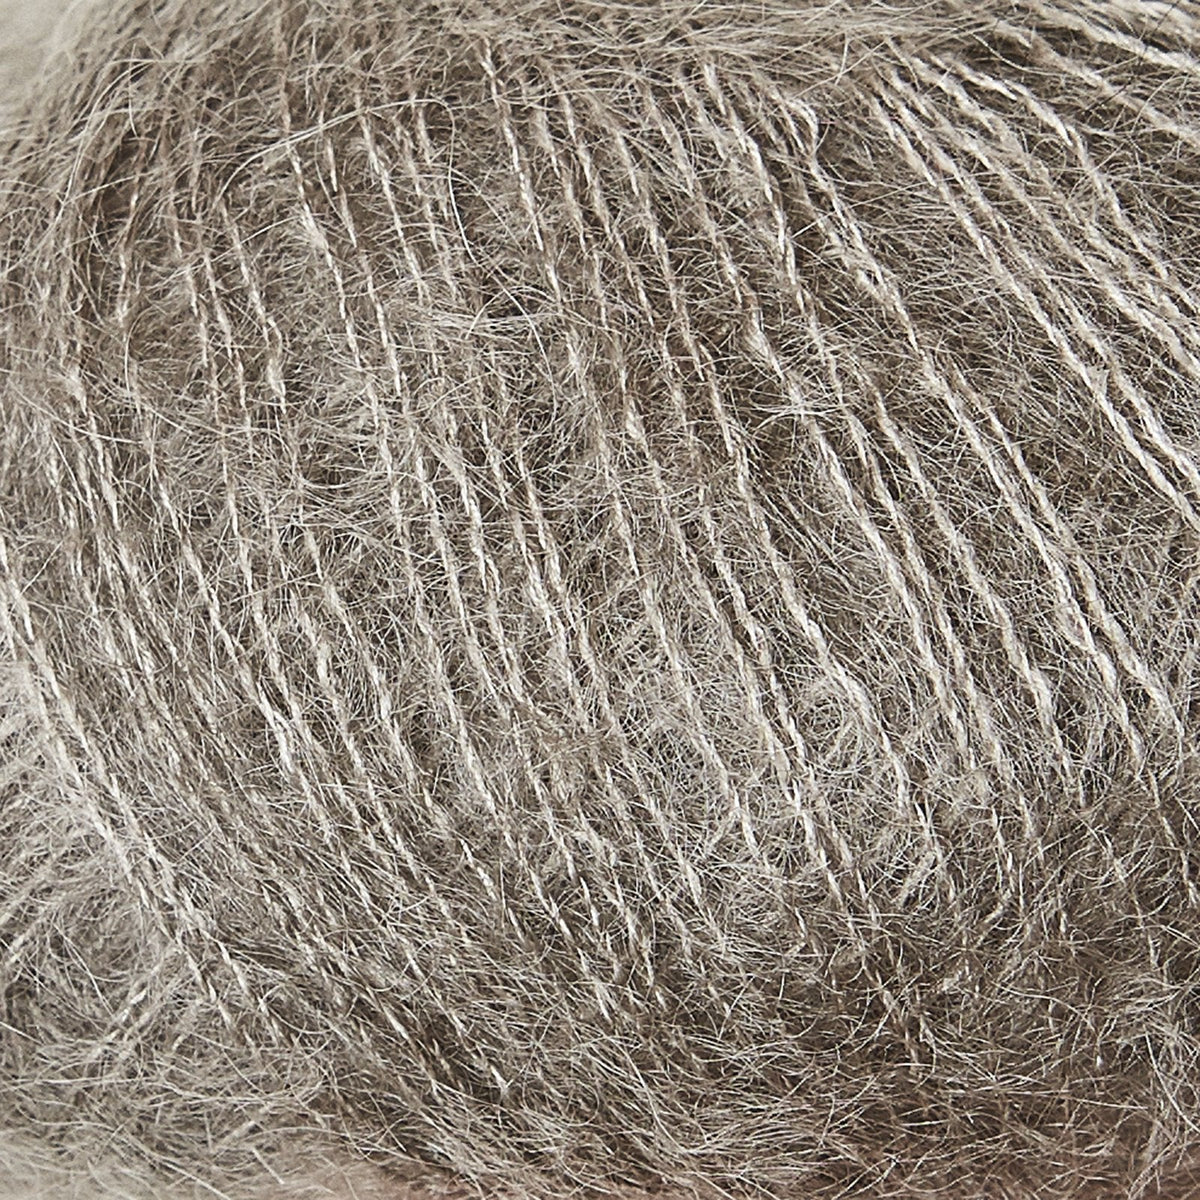 Støvet Elg / Dusty Moose - Soft Silk Mohair